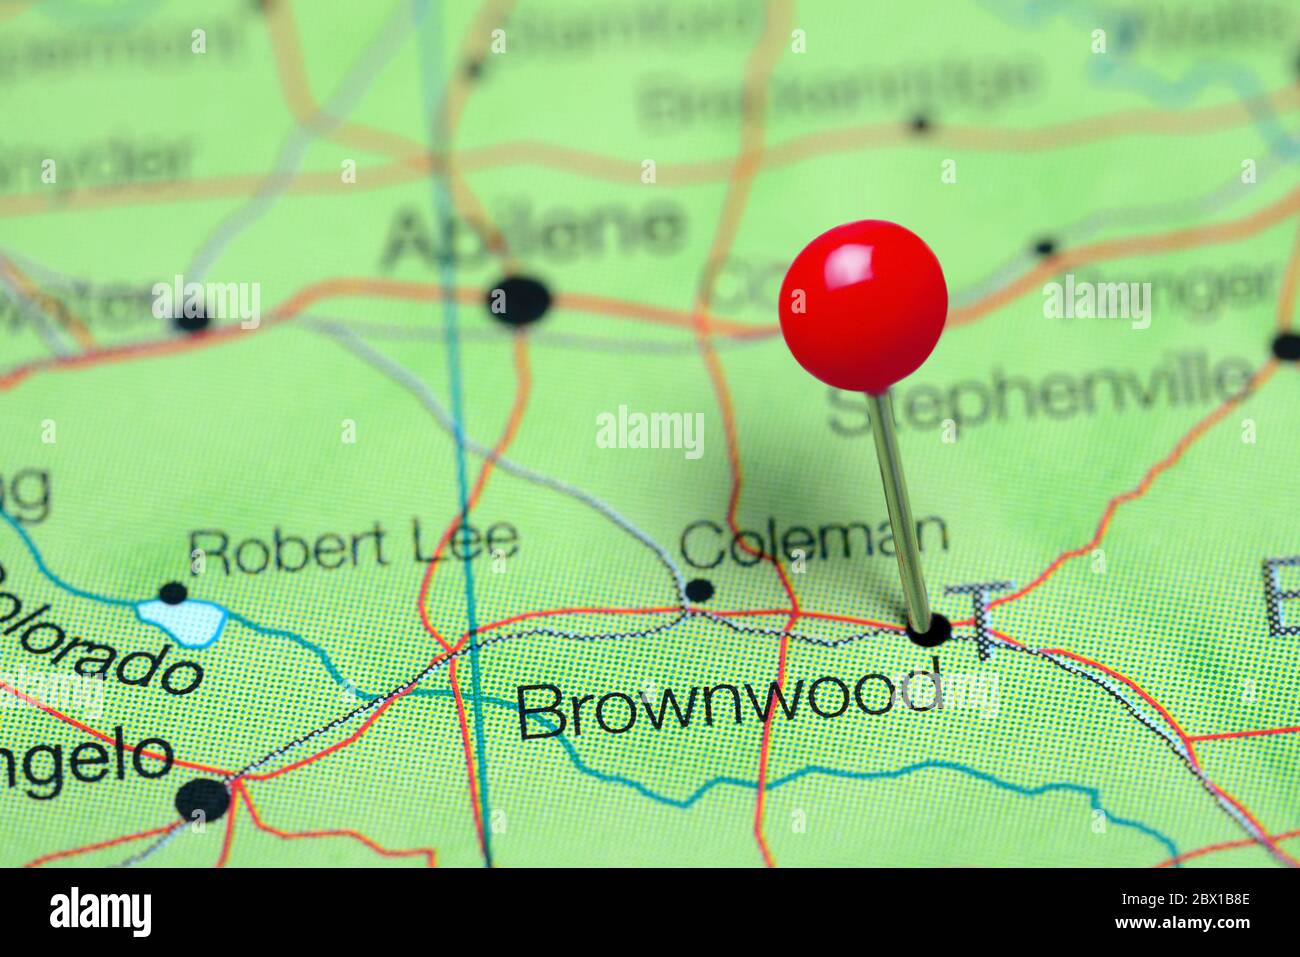 Brownwood cubrió un mapa de Texas, Estados Unidos Foto de stock